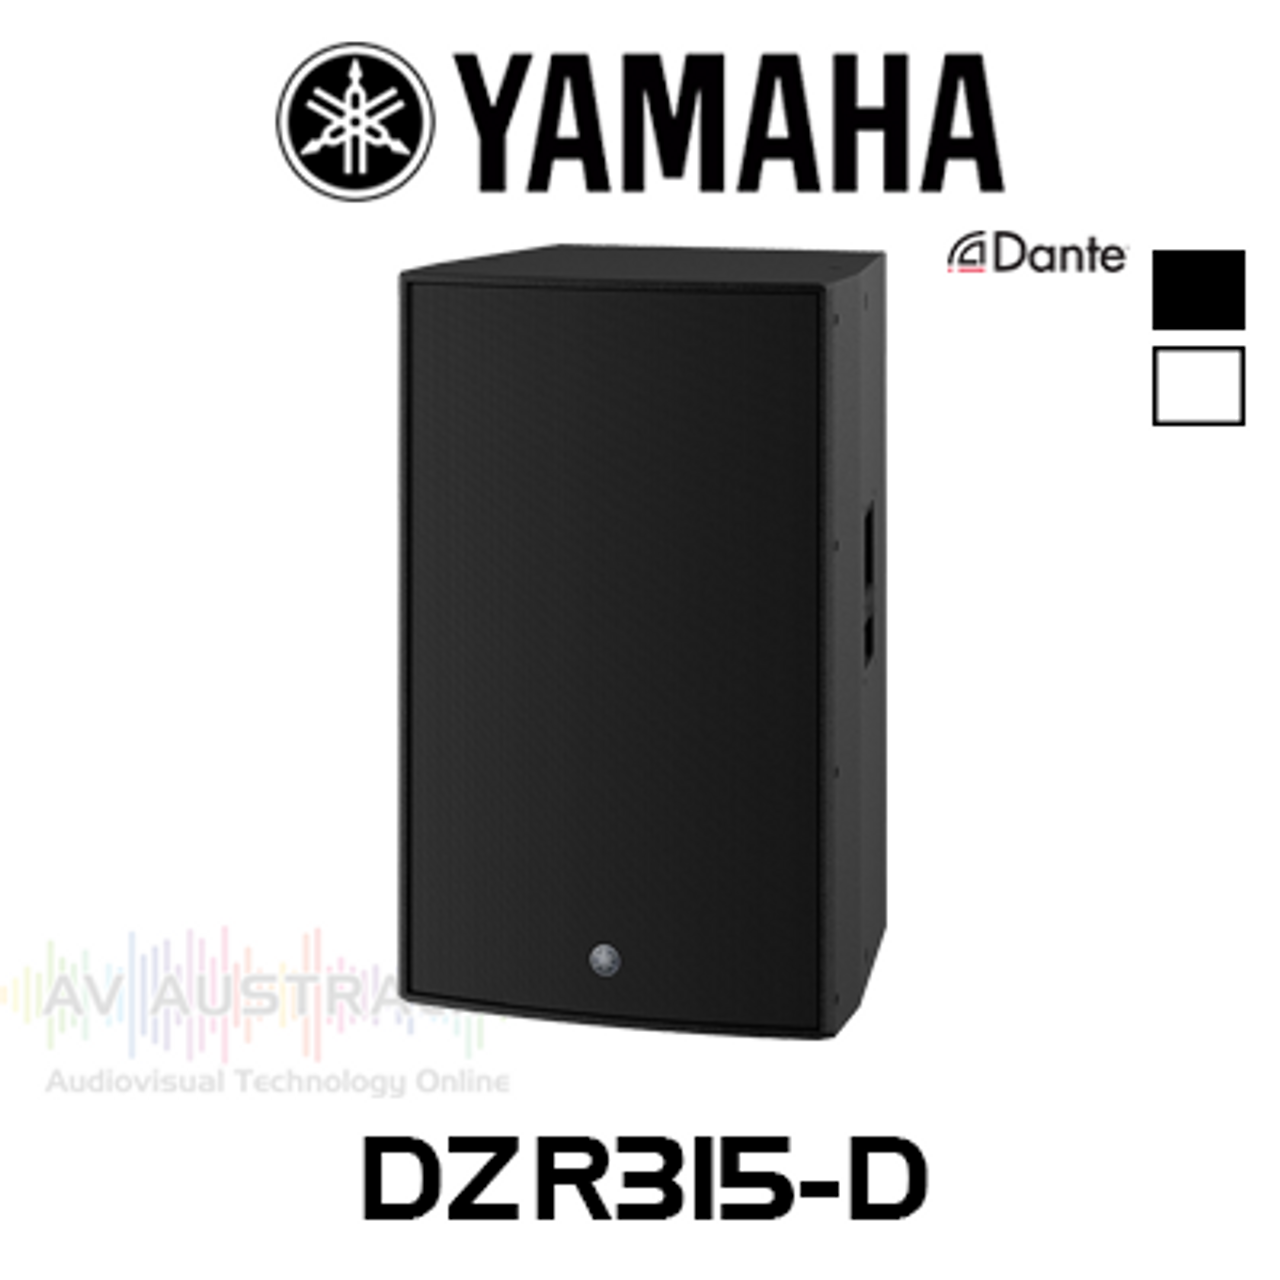 Yamaha DZR315-D 15" 3-Way Bi-Amped Powered Bass-Reflex Loudspeaker With Dante (Each)